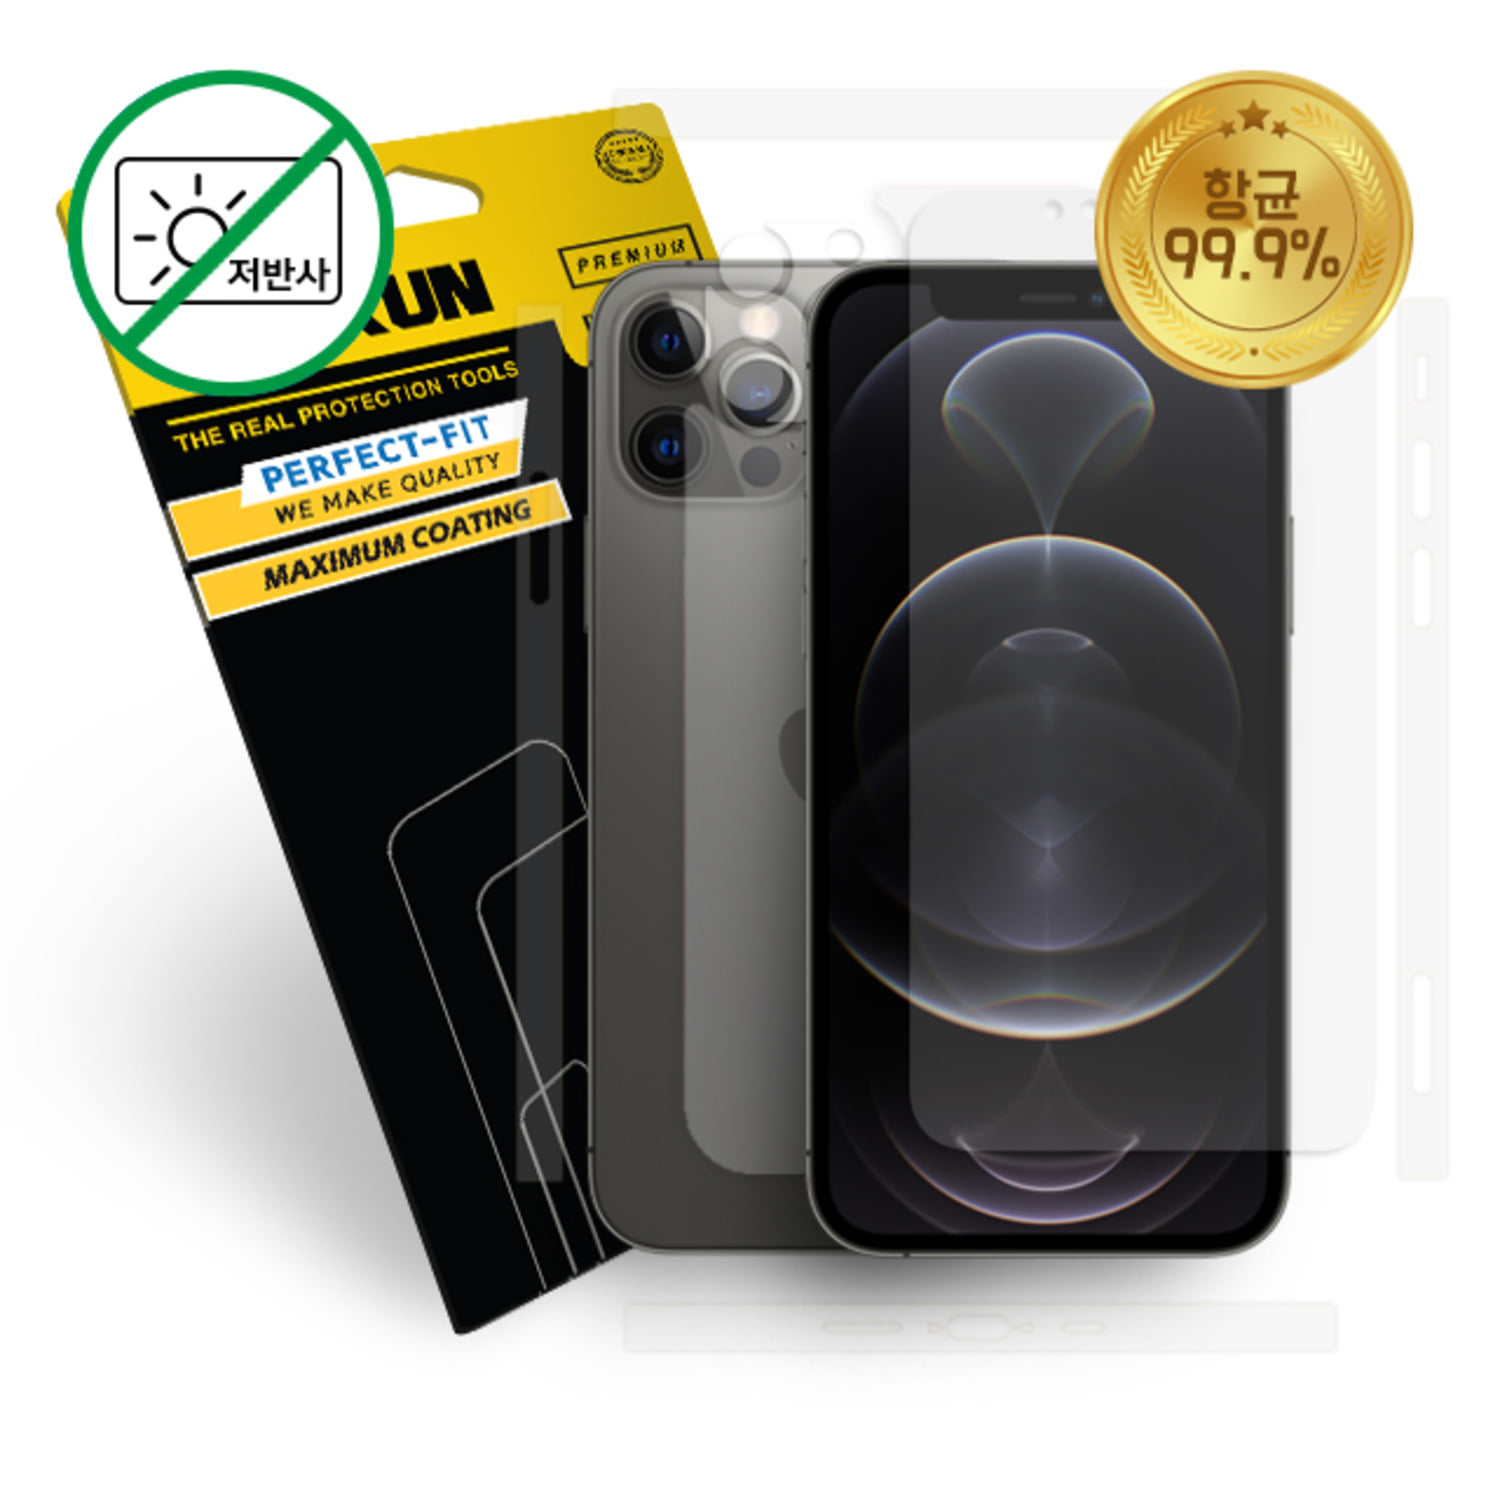 가우런 아이폰 12프로 항균 저반사 액정2매 +카메라(렌즈+렌즈 커버)2SET+무광(측면+후면) 외부보호필름 2매 풀세트(P0000DQE)